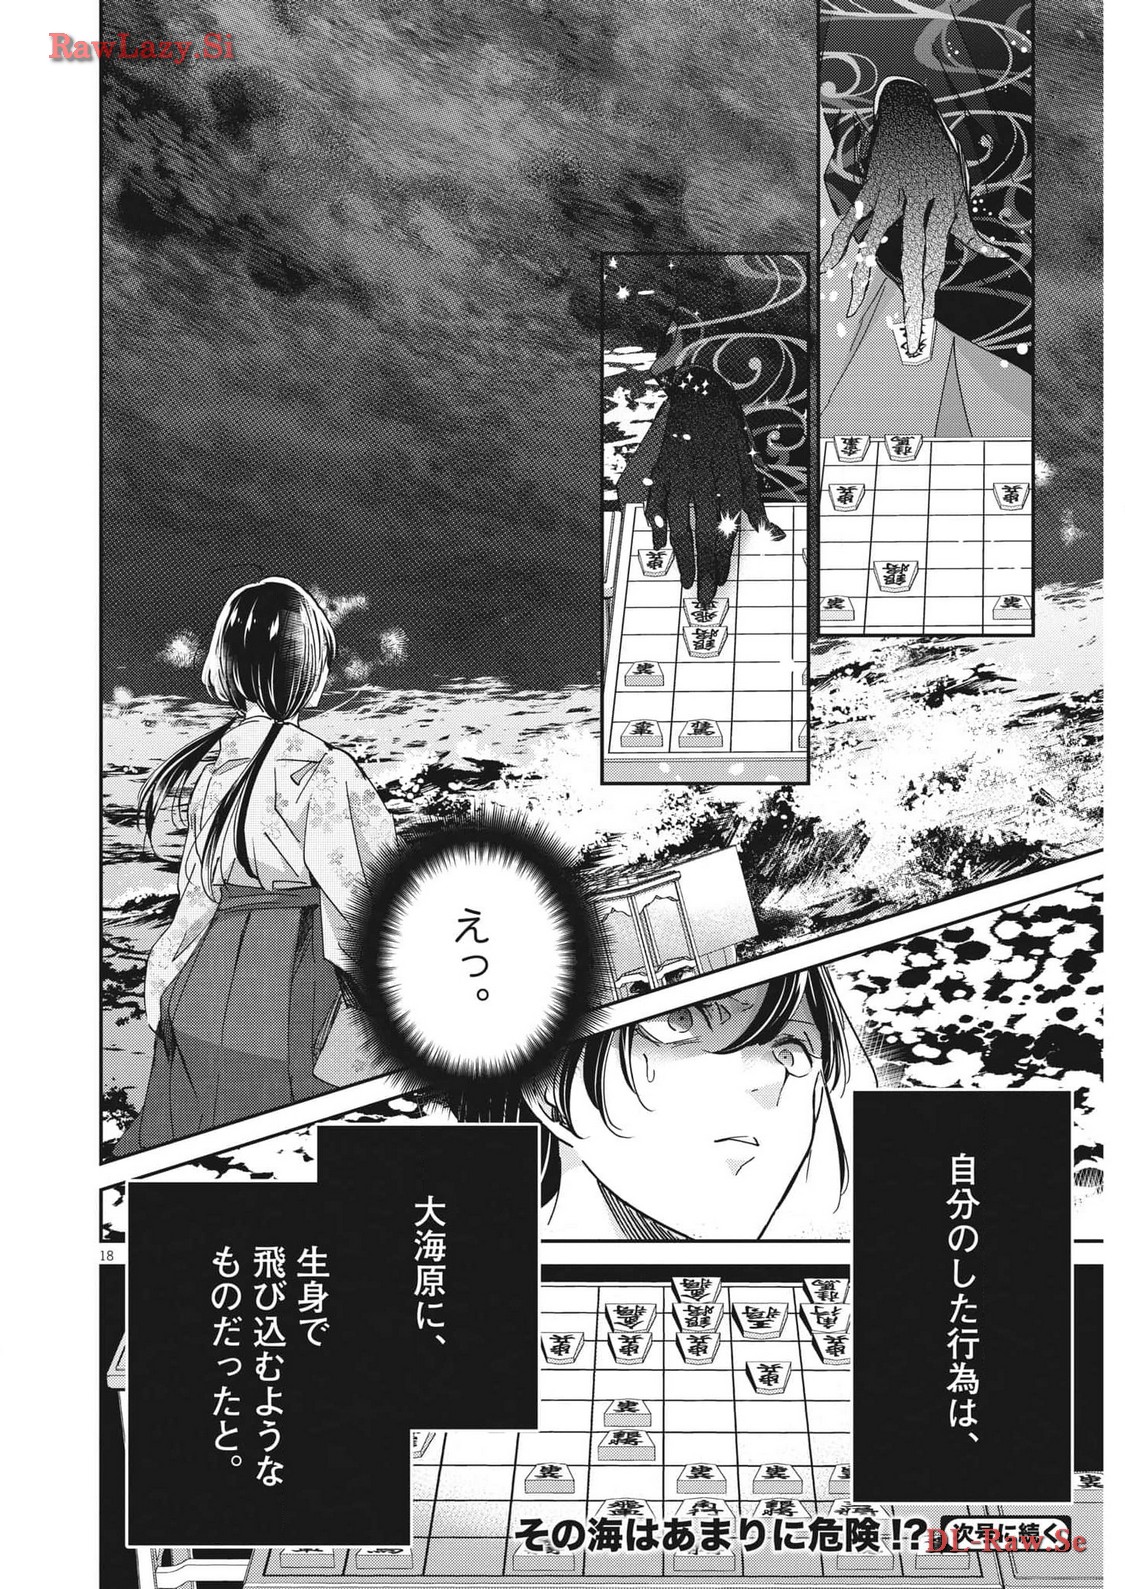 Eisei Otome no Tatakai-kata - Chapter 93 - Page 18